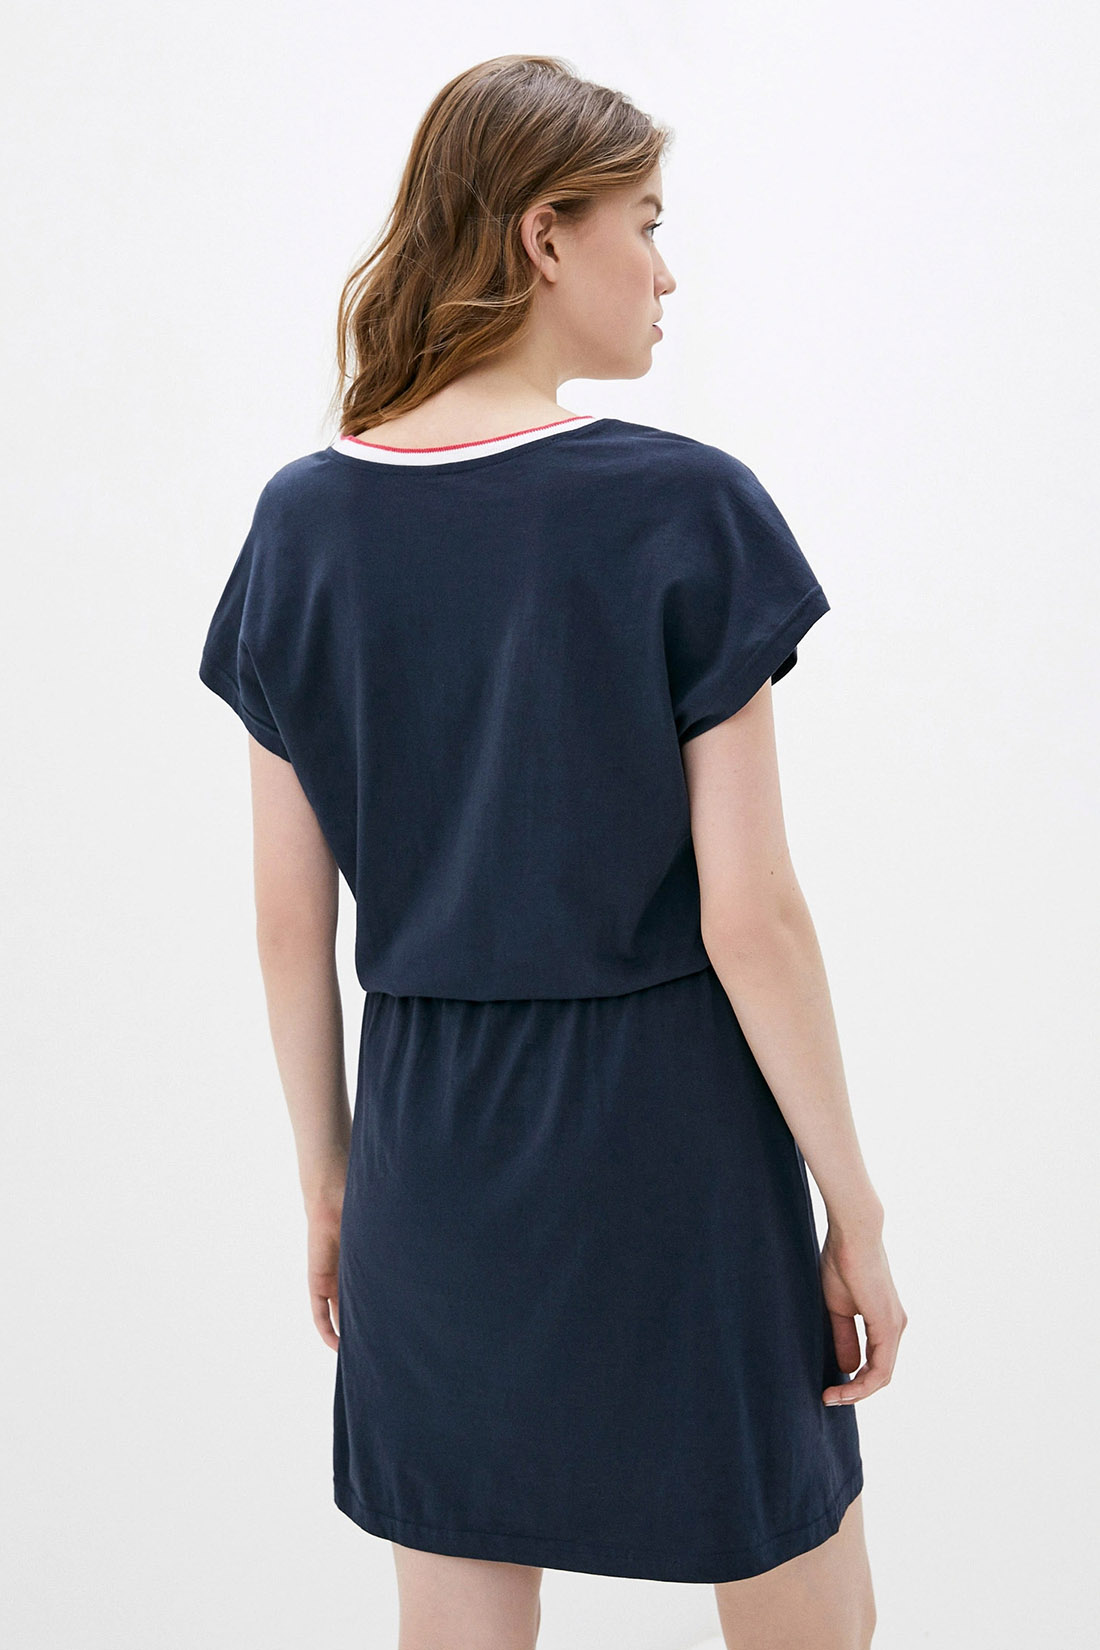 Платье-футболка с кулиской (арт. baon B459097), размер S, цвет синий Платье-футболка с кулиской (арт. baon B459097) - фото 2